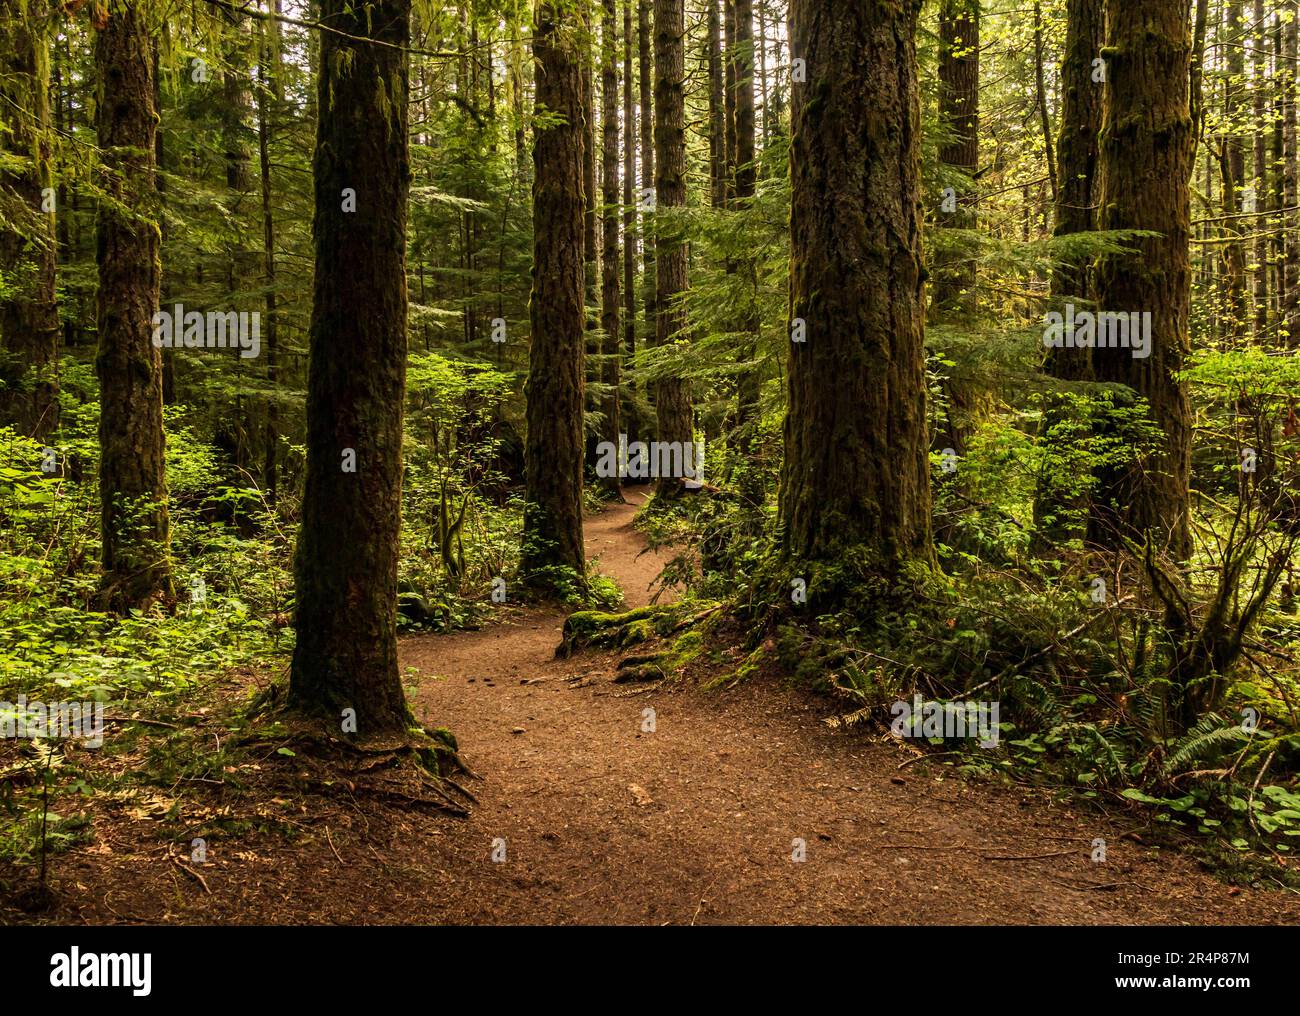 Sentier forestier sur l'île de Vancouver, avec de grands conifères, le sapin et le cèdre. Banque D'Images